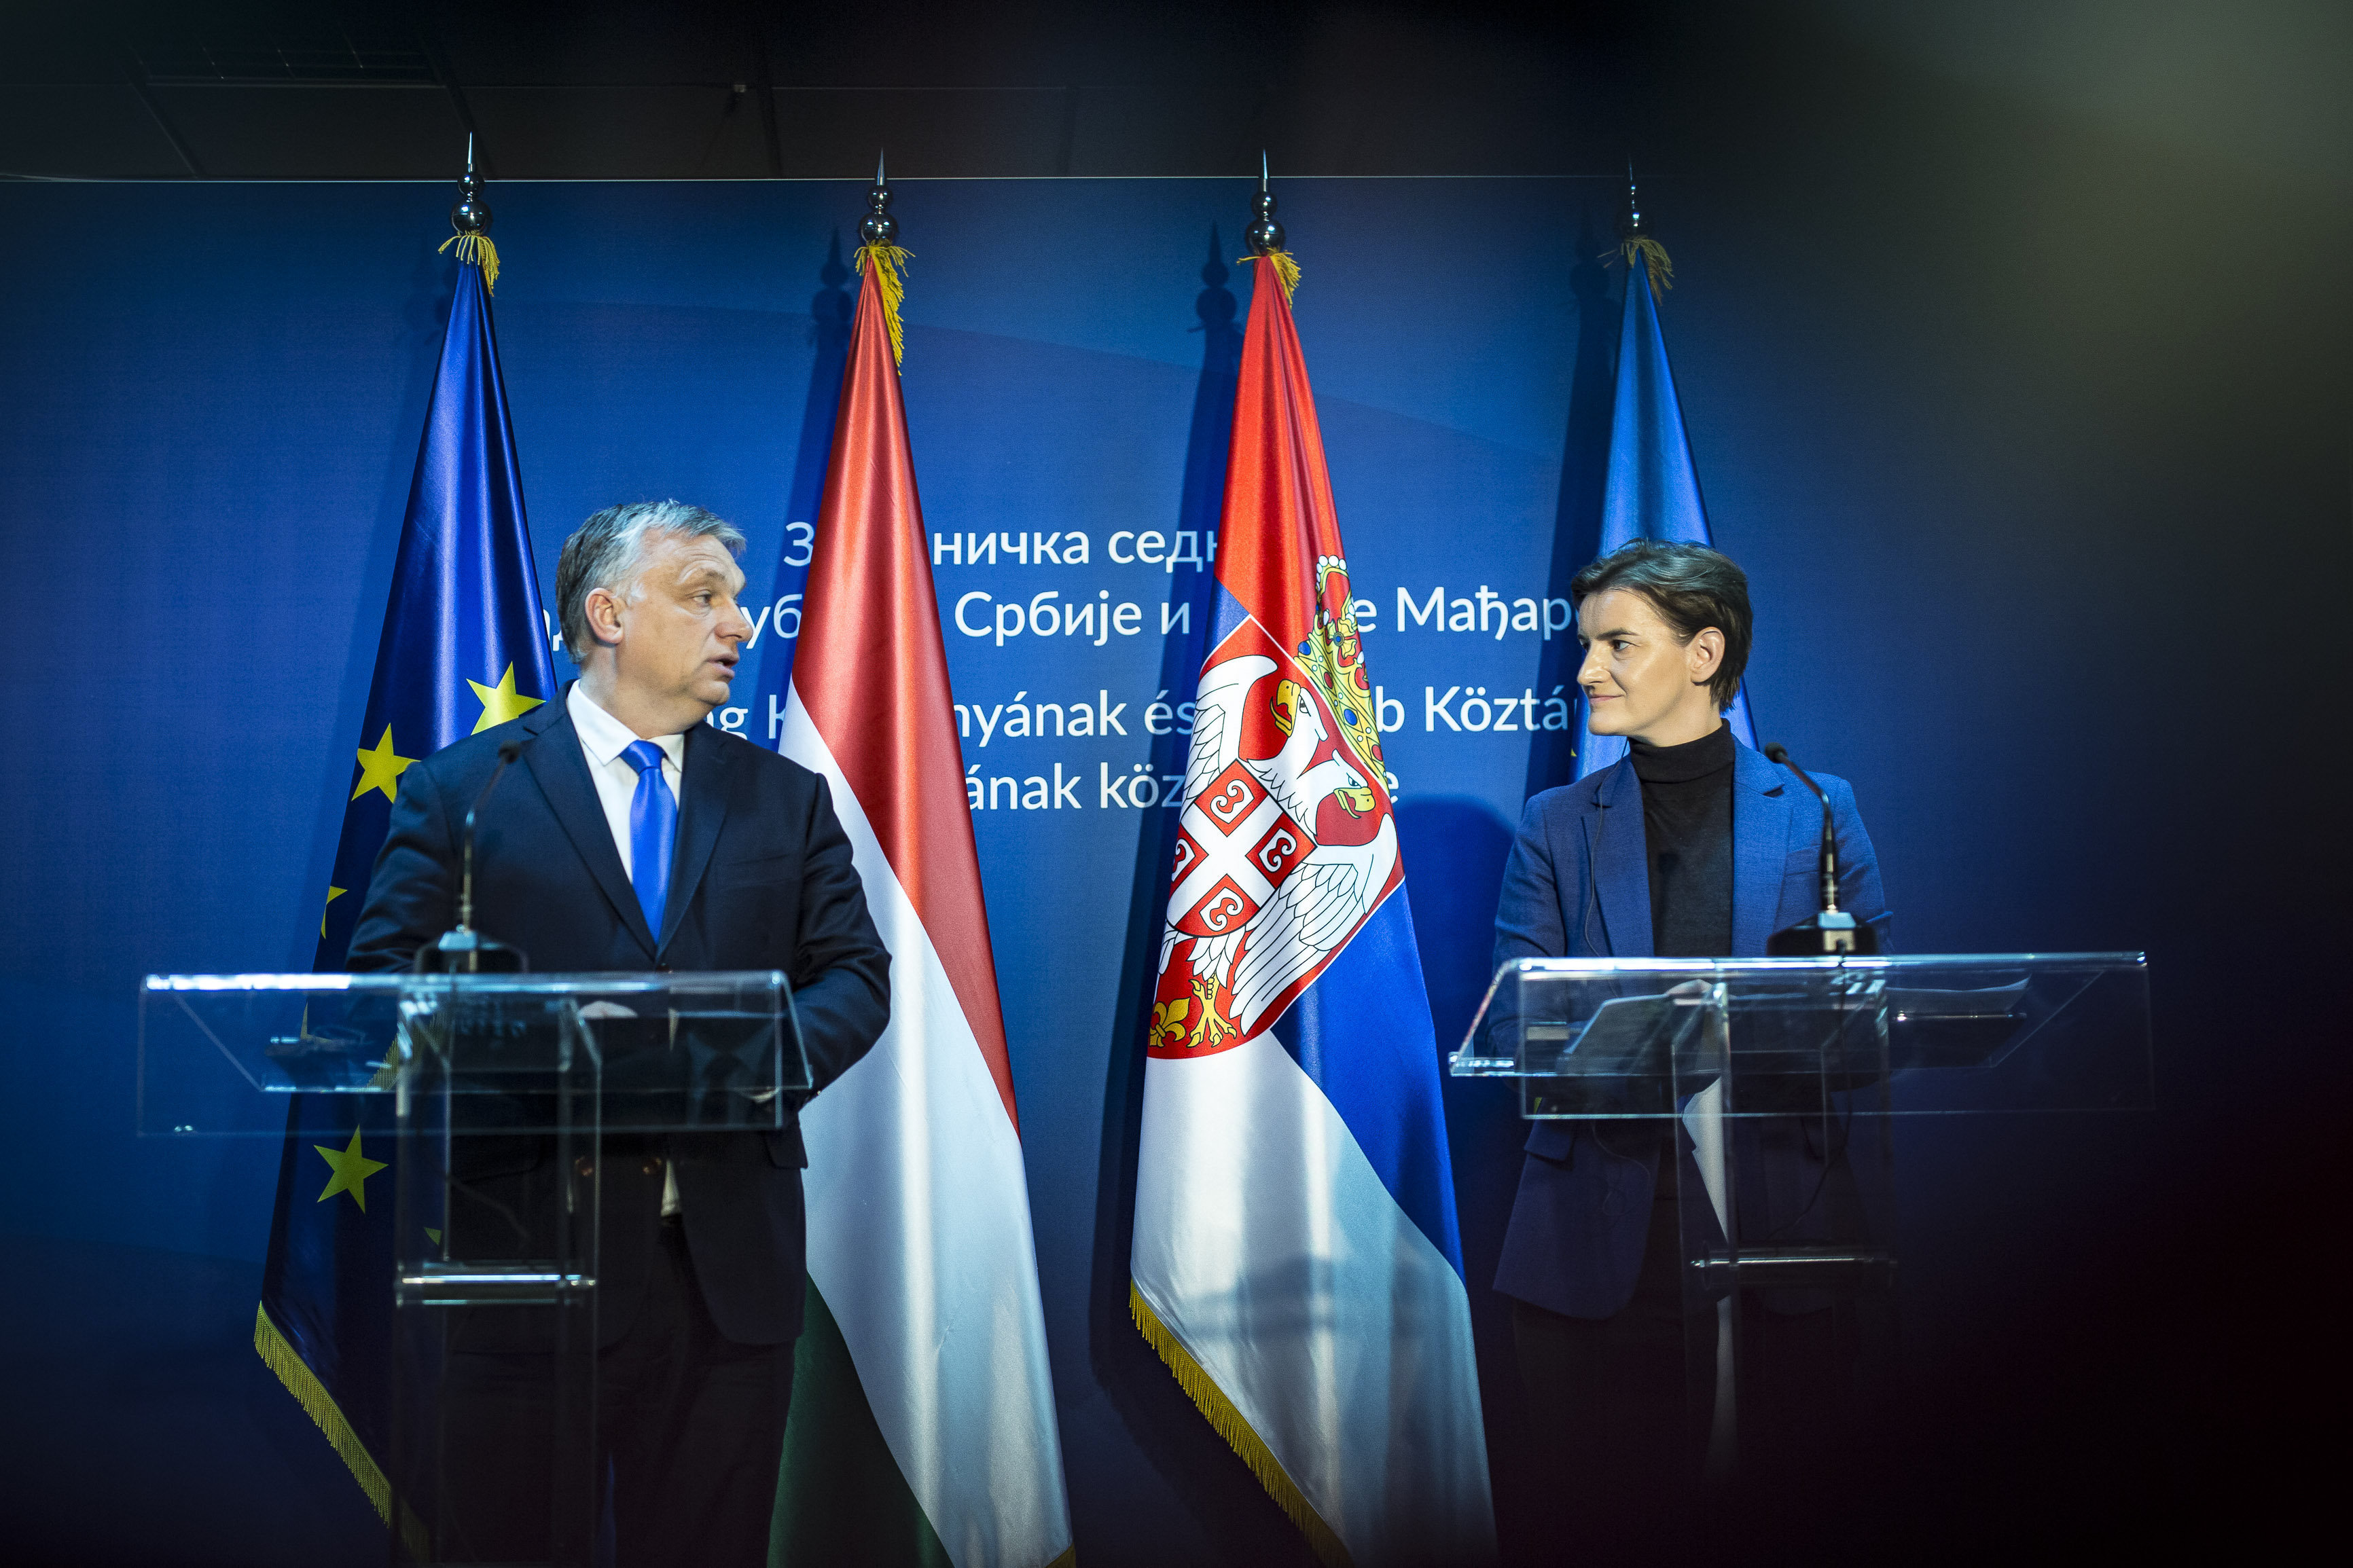 सर्बिया में आयोजित सर्बियाई और हंगेरियन सरकारों का संयुक्त सत्र